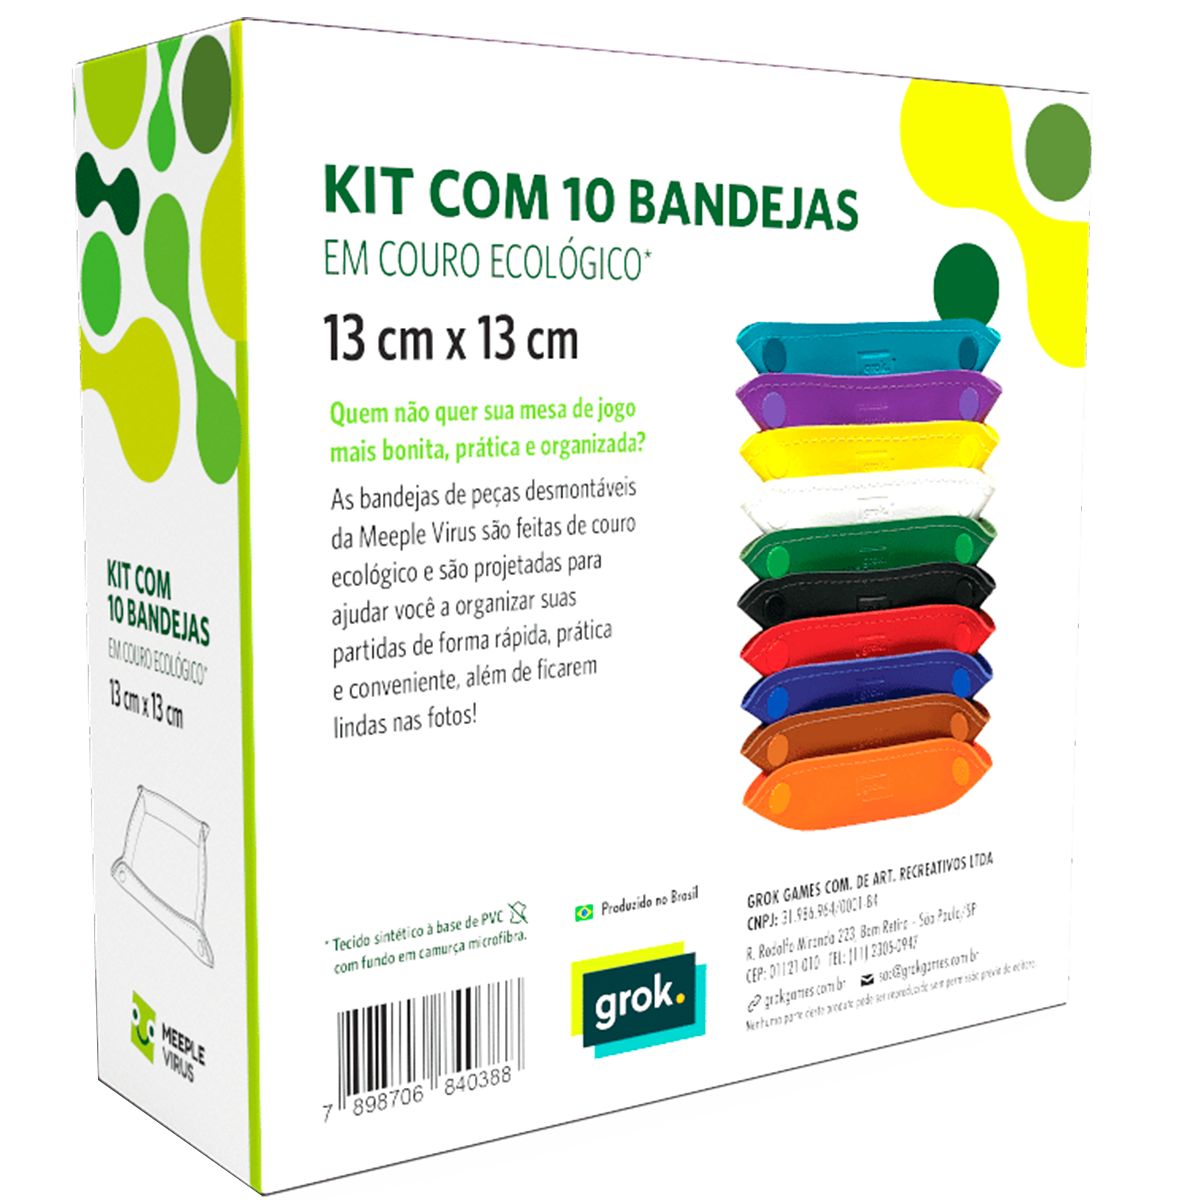 Kit Com 10 Bandejas de Peças Board Game